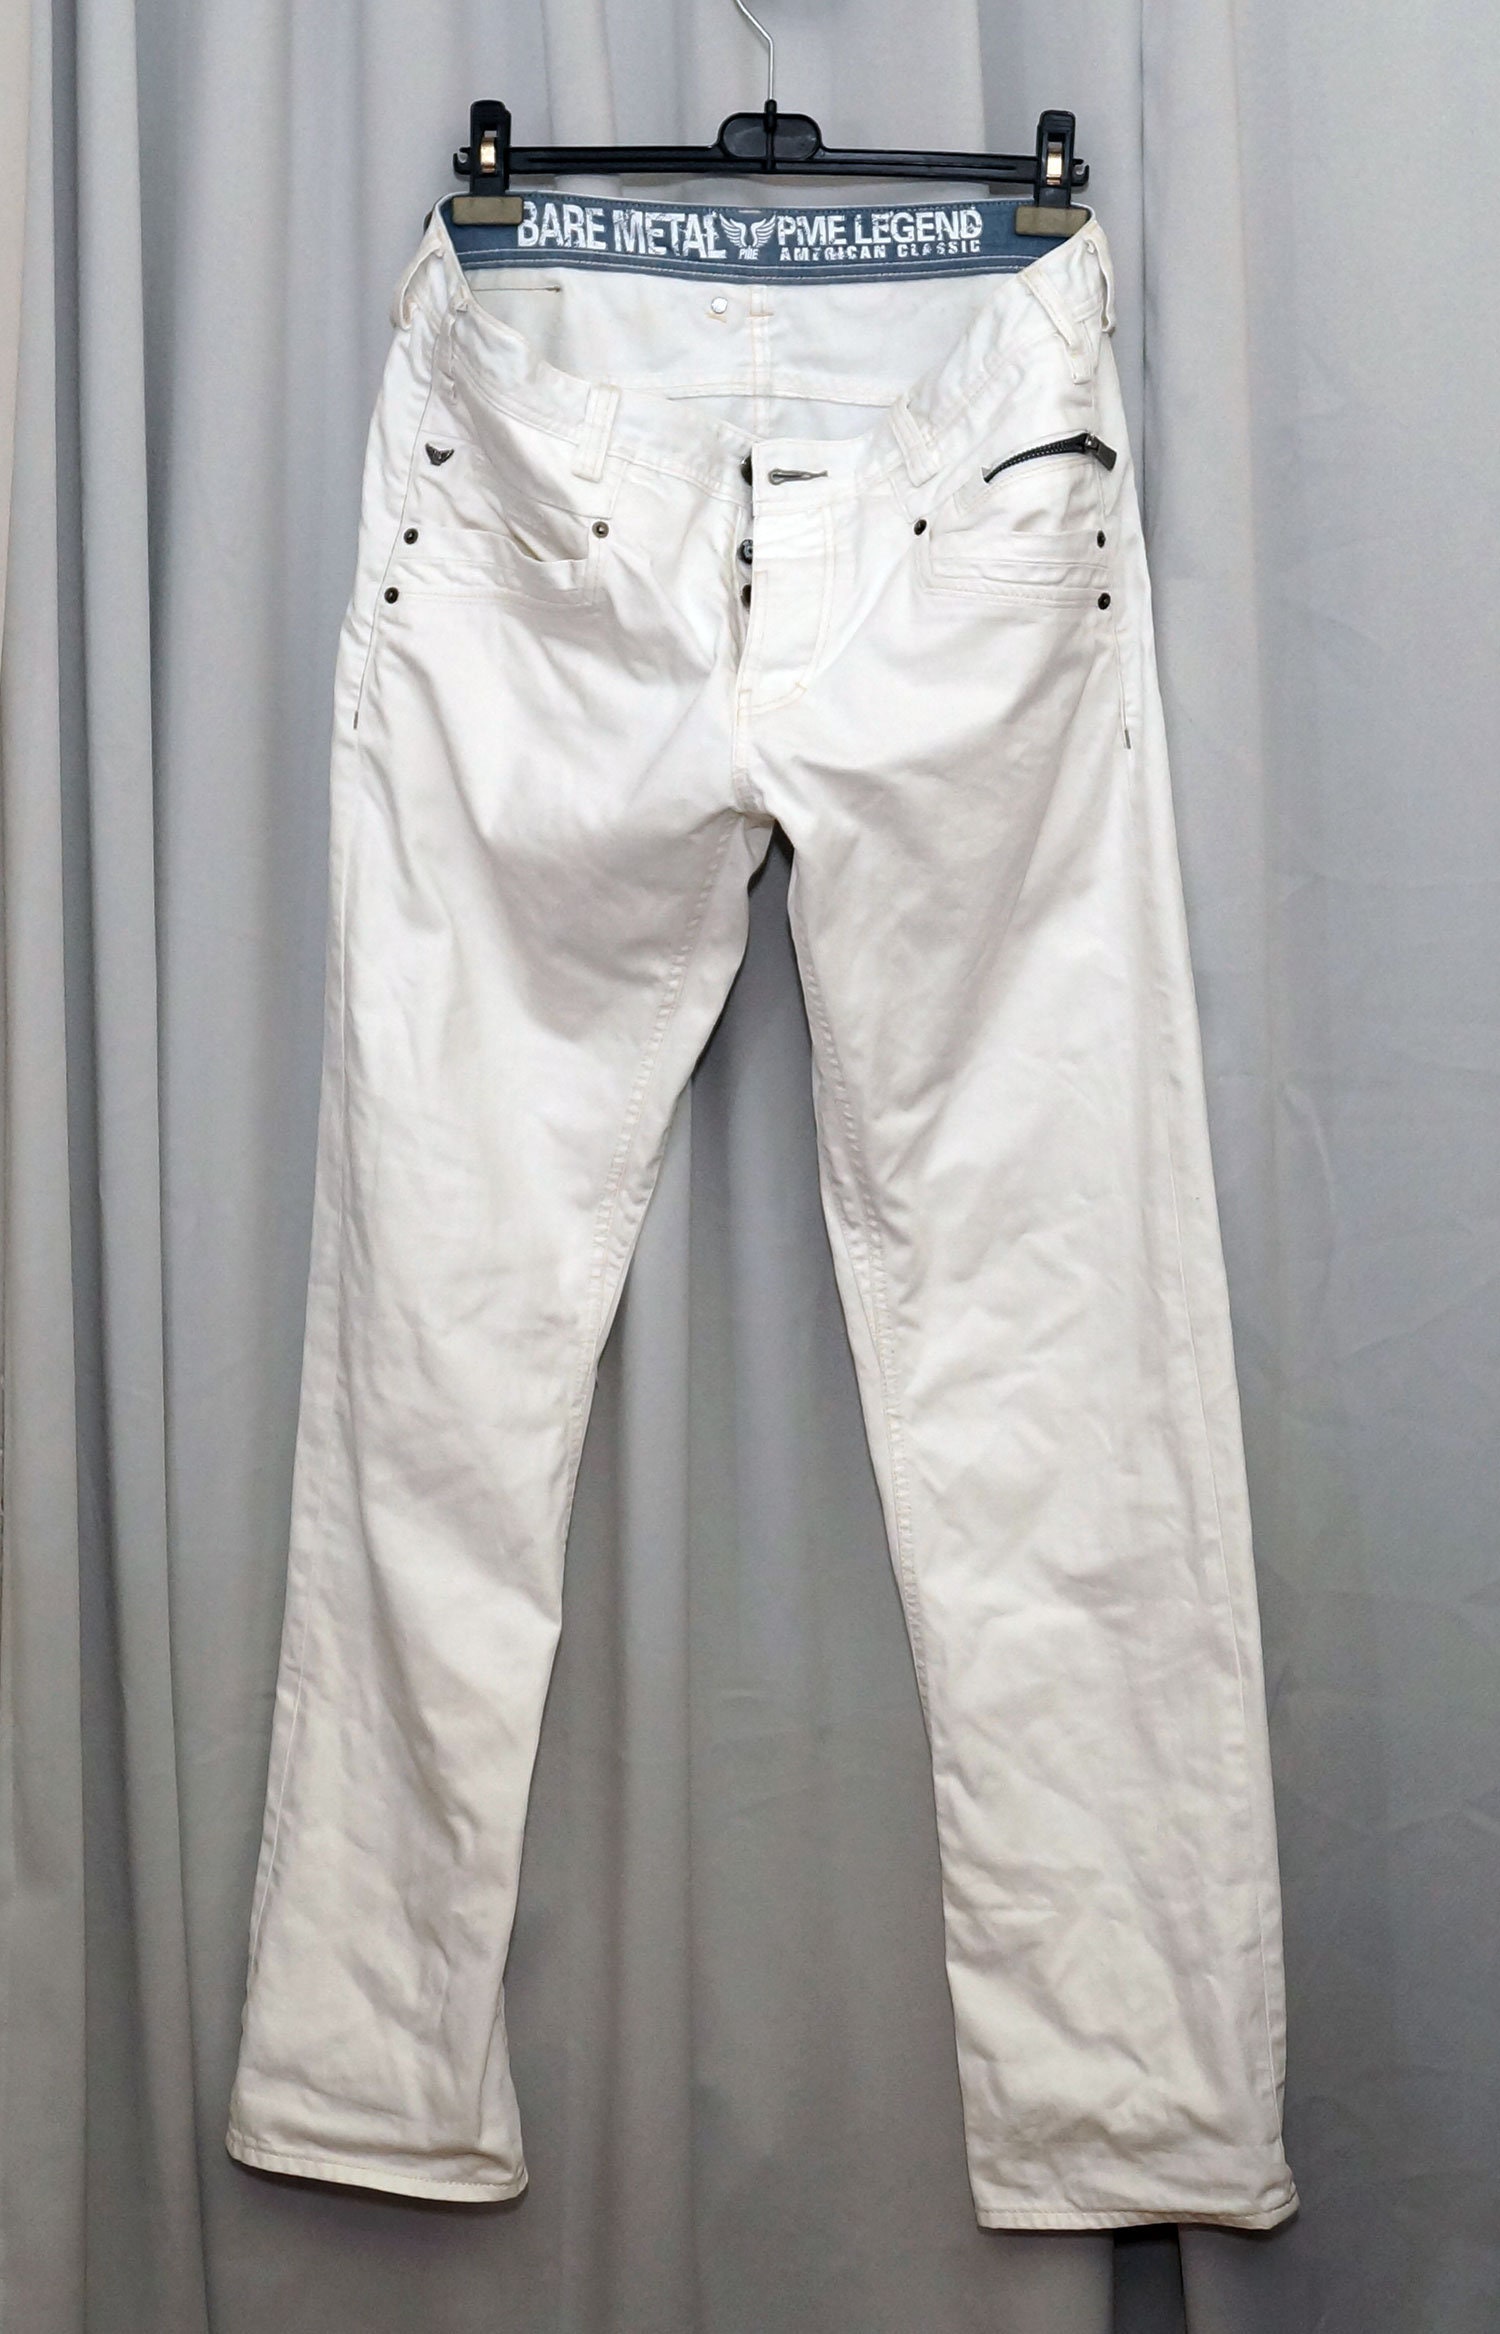 abces schokkend Miniatuur White Vintage PME LEGEND Jeans . Aviator. W34 L34 - Etsy